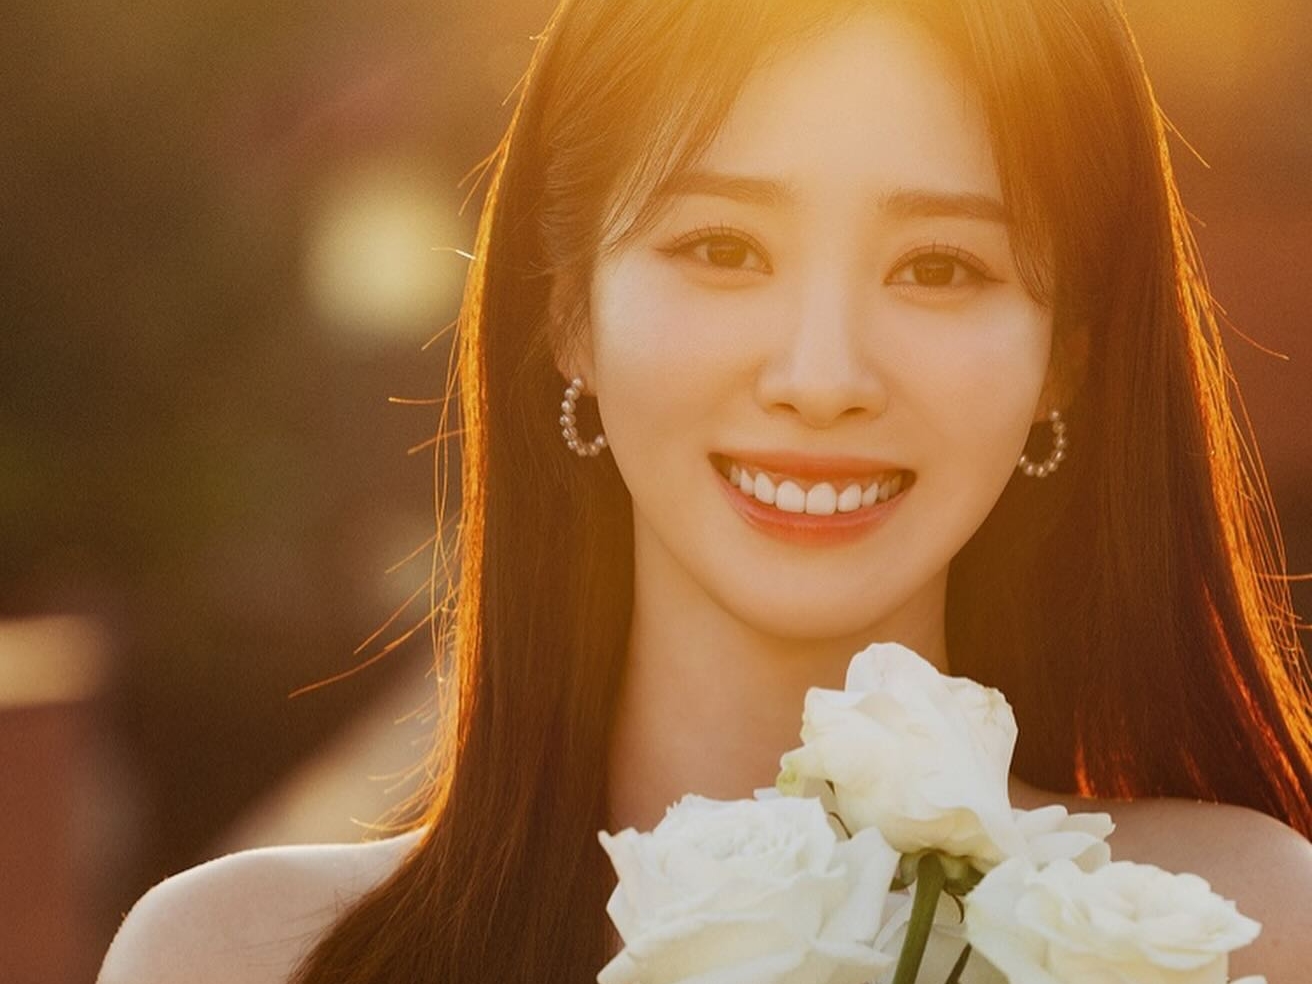 韓国MBCの人気女子アナ、電撃結婚を発表「来週結婚します」…モデル顔負けのウエディング写真も公開